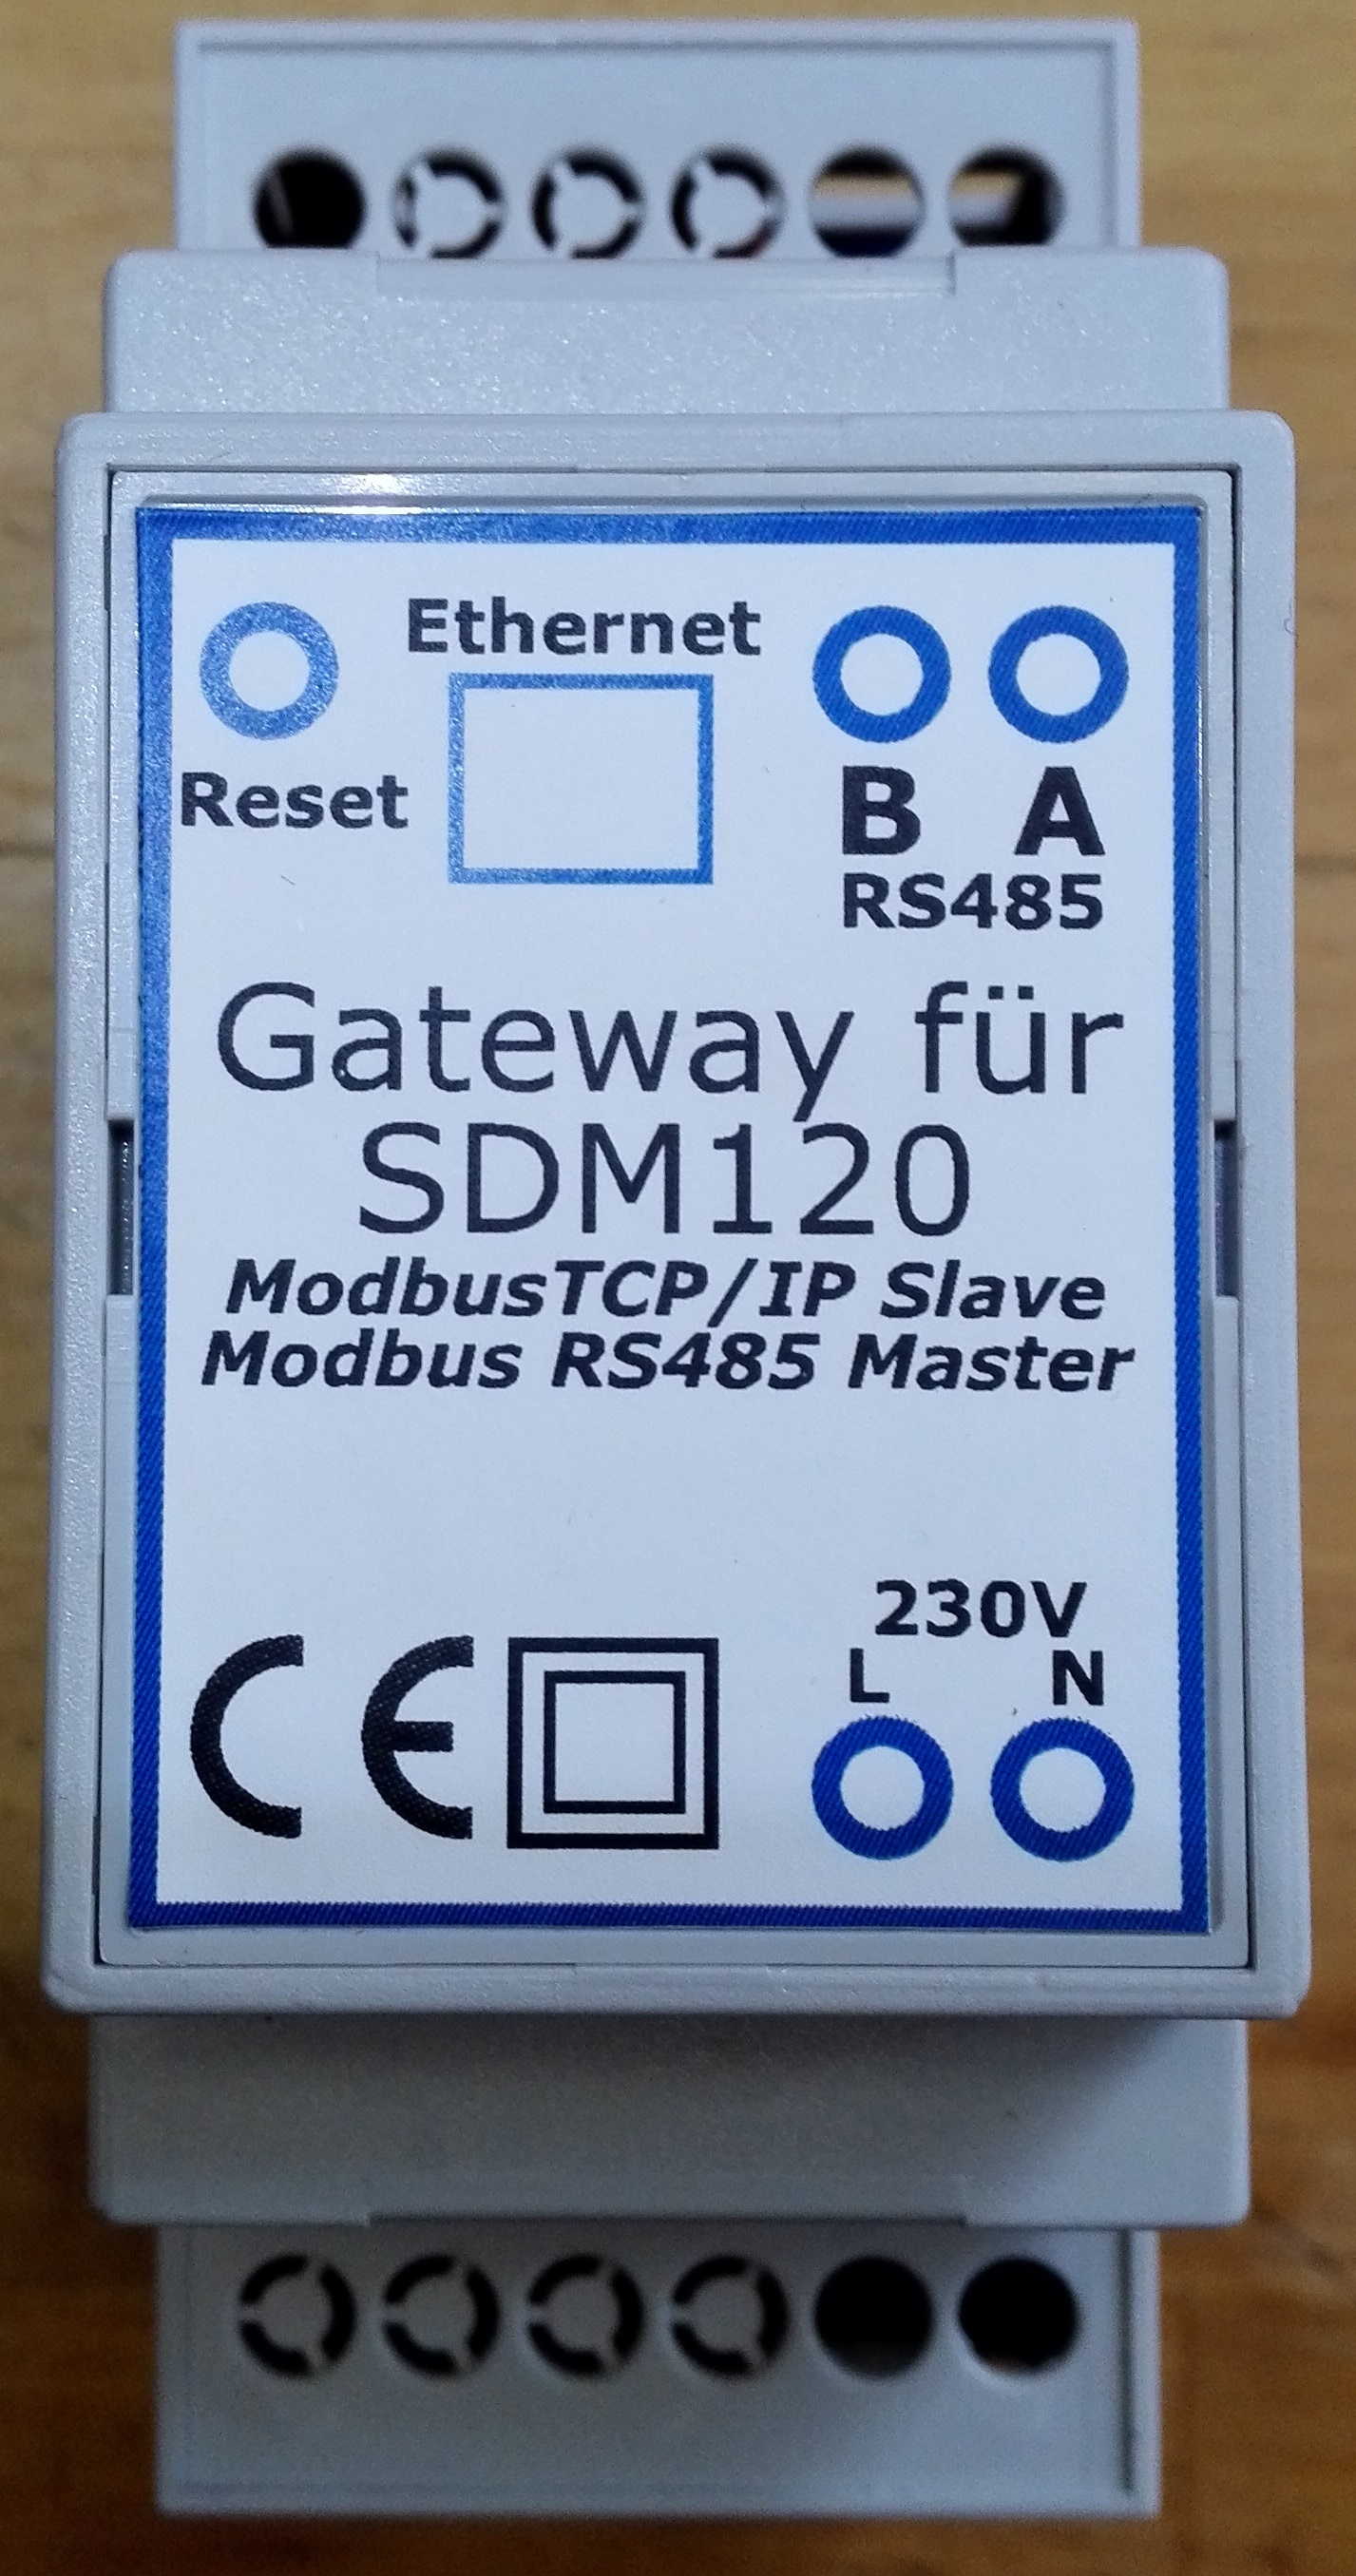 Gateway Modbus TCP/IP für SDM120 Zähler